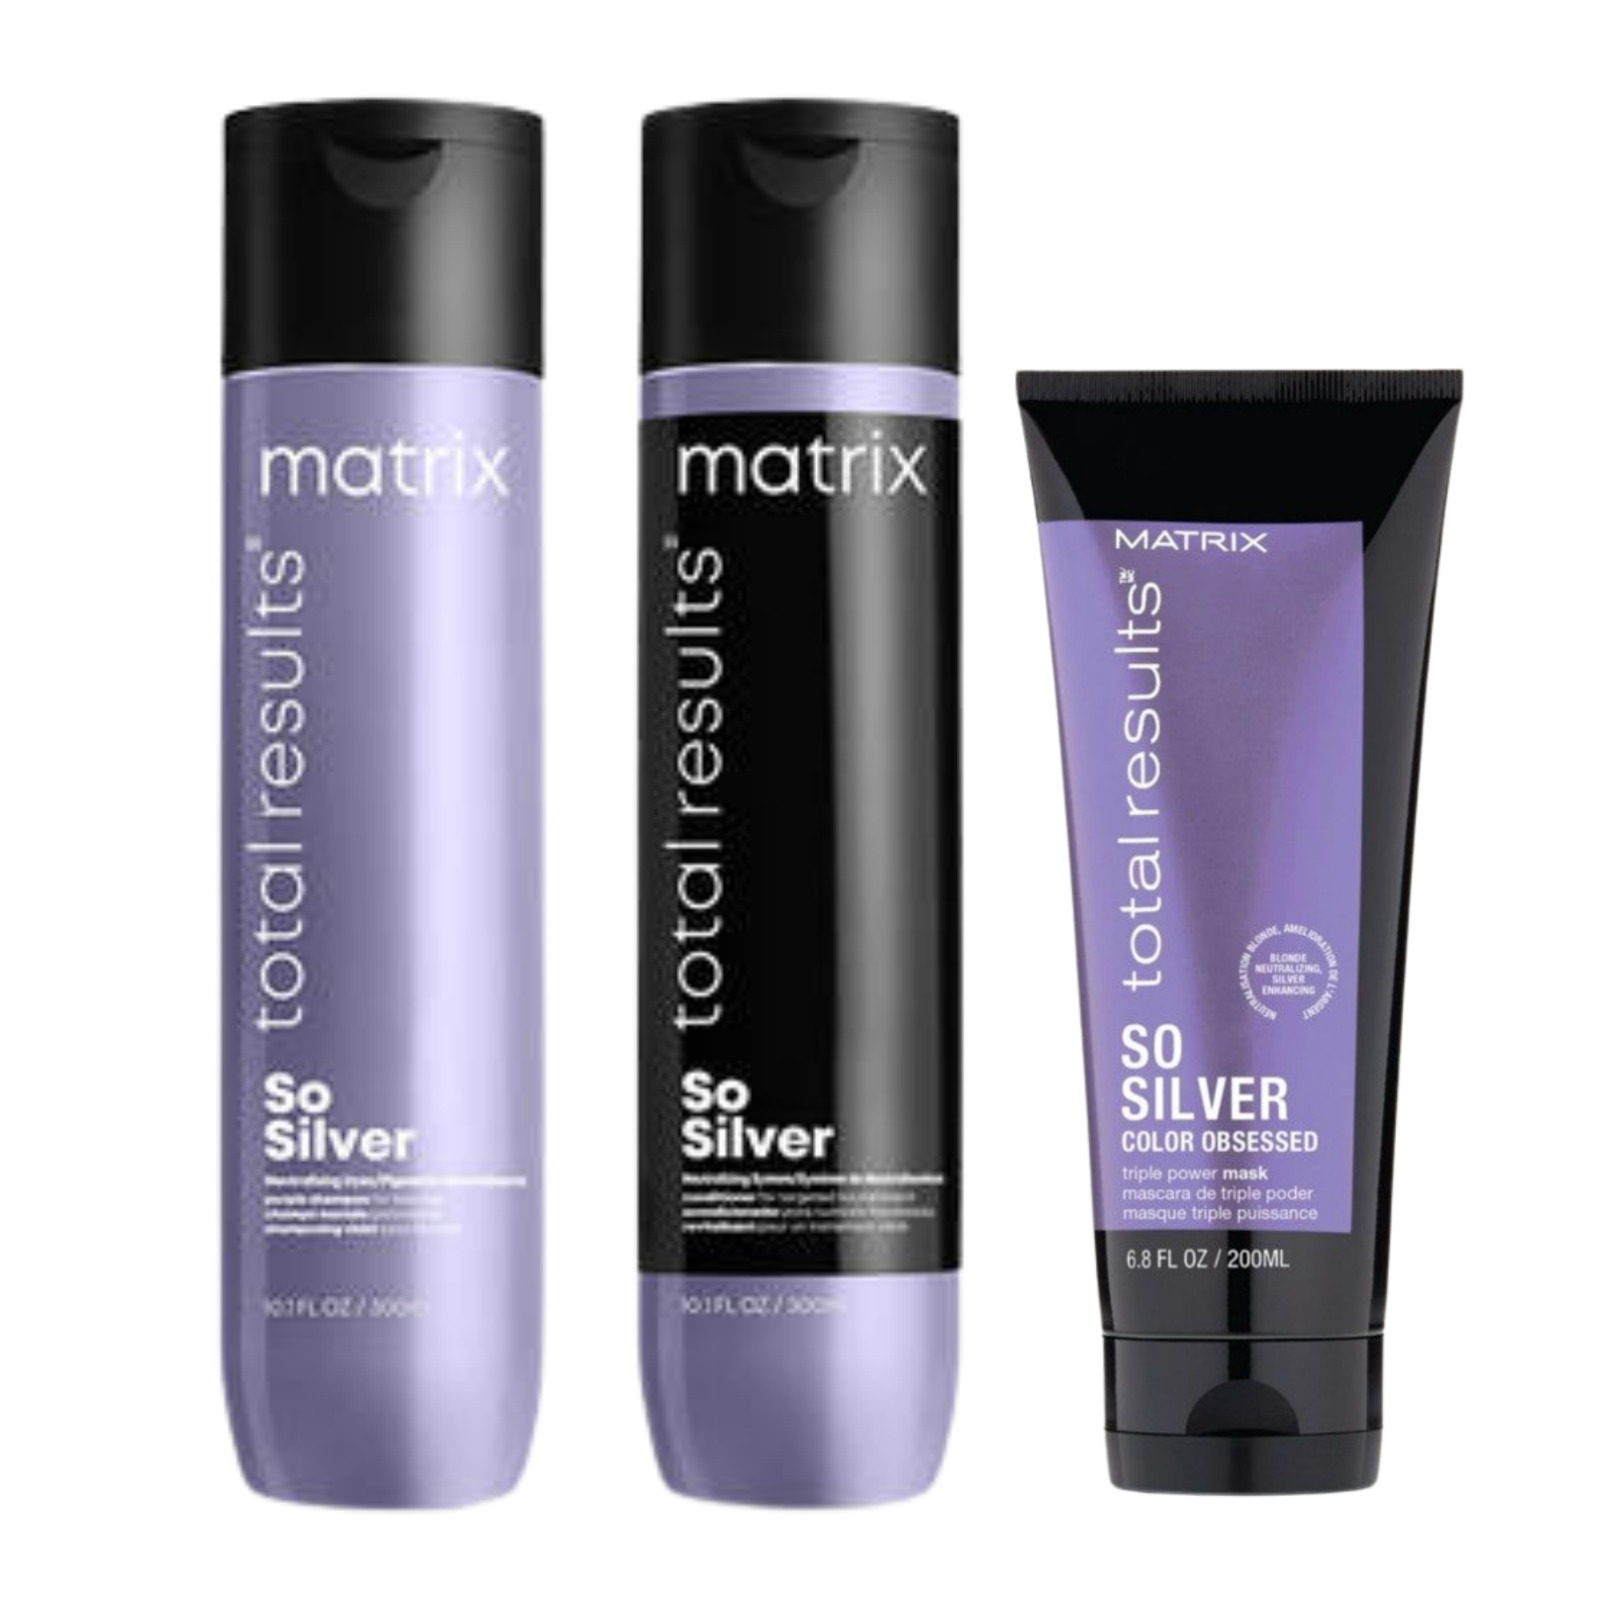 Matrix So Silver Shampoo, Conditioner, Mask Trio (new /100 % Authentic)